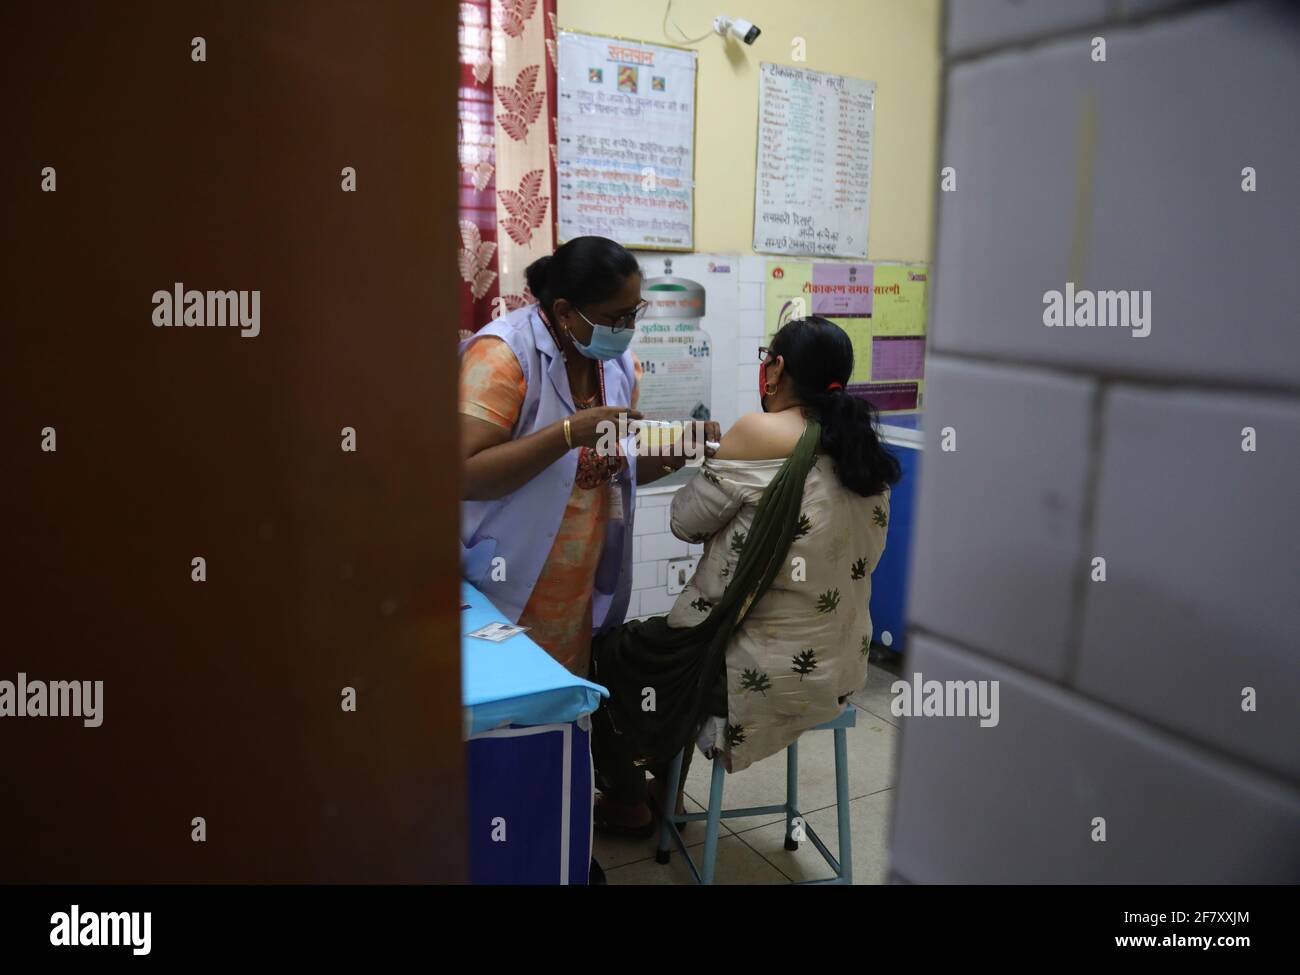 Eine Frau erhält eine Dosis des von Bharat Biotech entwickelten indischen Covid-19-Impfstoffes COVAXIN während einer Impfkampagne in einem staatlichen Gesundheitszentrum.die kumulative Anzahl der Covid-19-Impfstoffdosen, die am Freitag im Land verabreicht wurden, überstieg 98 Millionen, In den letzten 24 Stunden wurden fast 34 Impfdosen verabreicht. (Foto von Naveen Sharma / SOPA Images/Sipa USA) Stockfoto